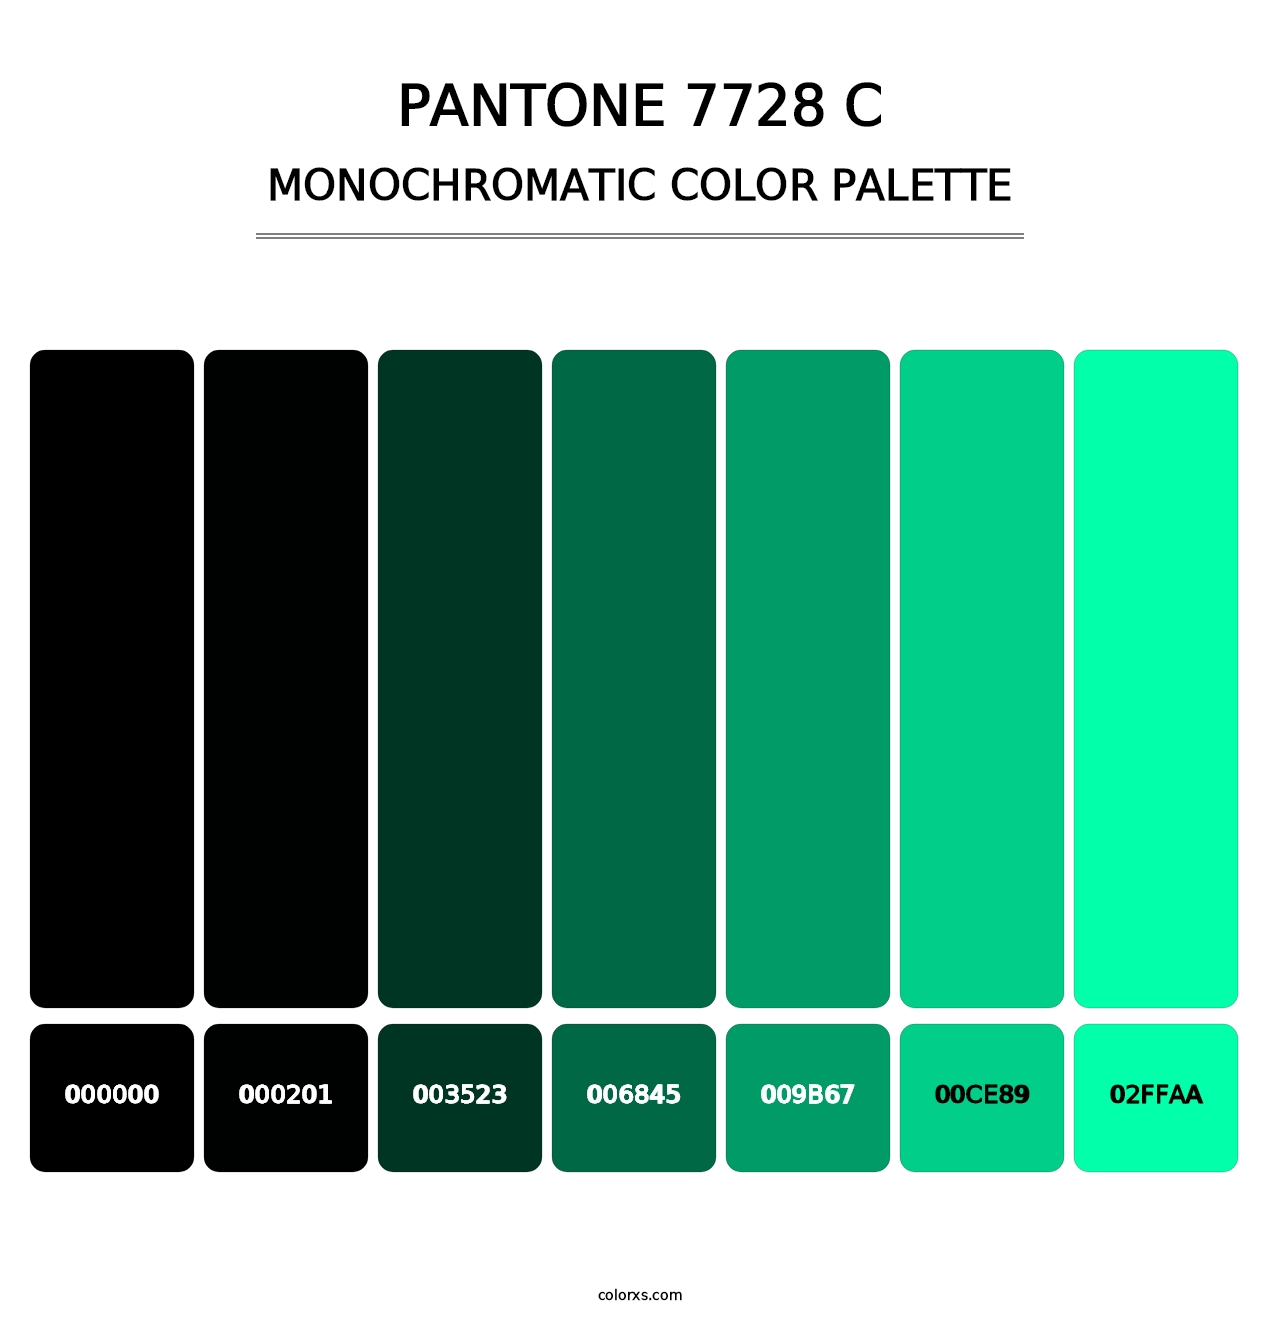 PANTONE 7728 C - Monochromatic Color Palette